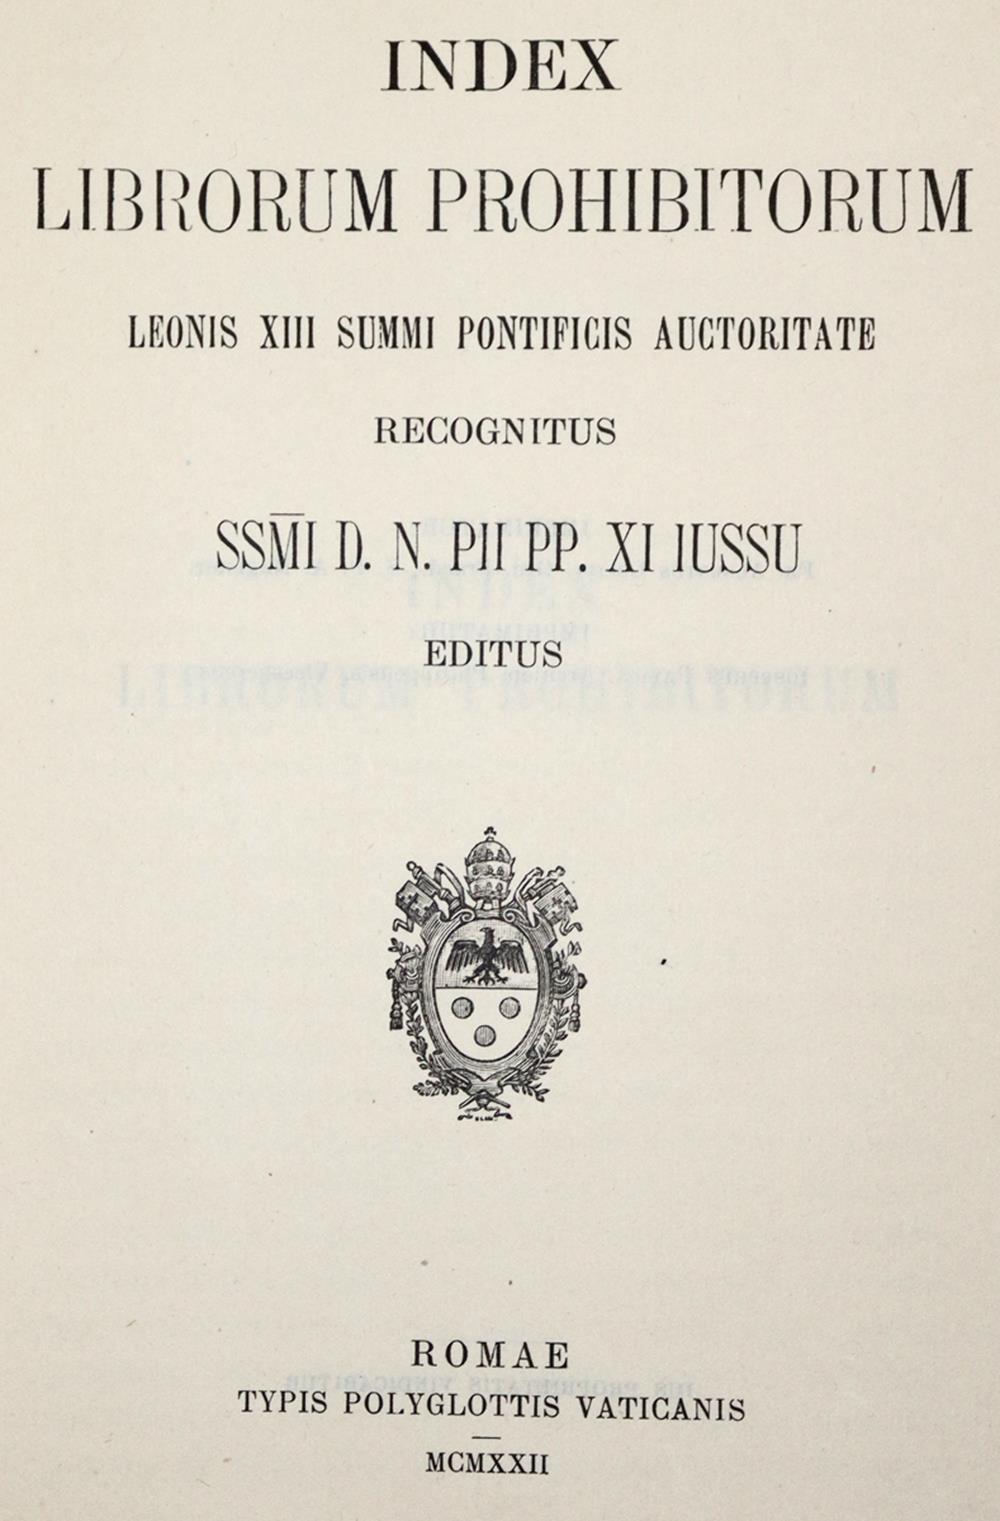 IndexIndex libri prohibitorum. Leonis XIII summi pontificus auctoritate recognitus. PiiInde